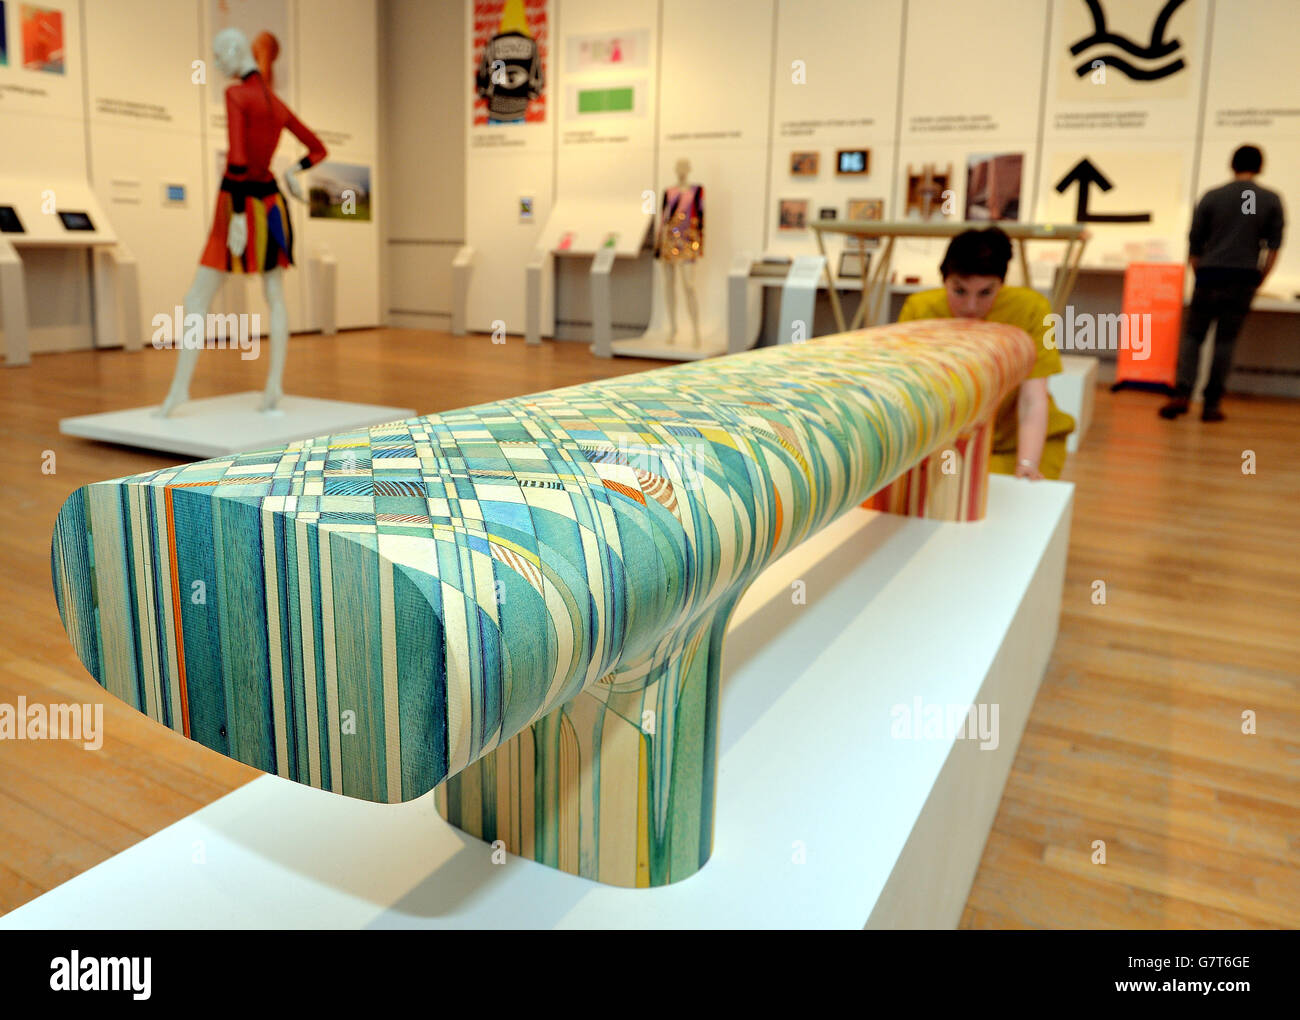 Une femme étudie un siège en mosaïque teint en bois, qui est l'un des 76 projets nominés pour le Design de l'année 2015, allant du mobilier du futur aux vêtements et voitures, exposés au Design Museum, Londres. Banque D'Images